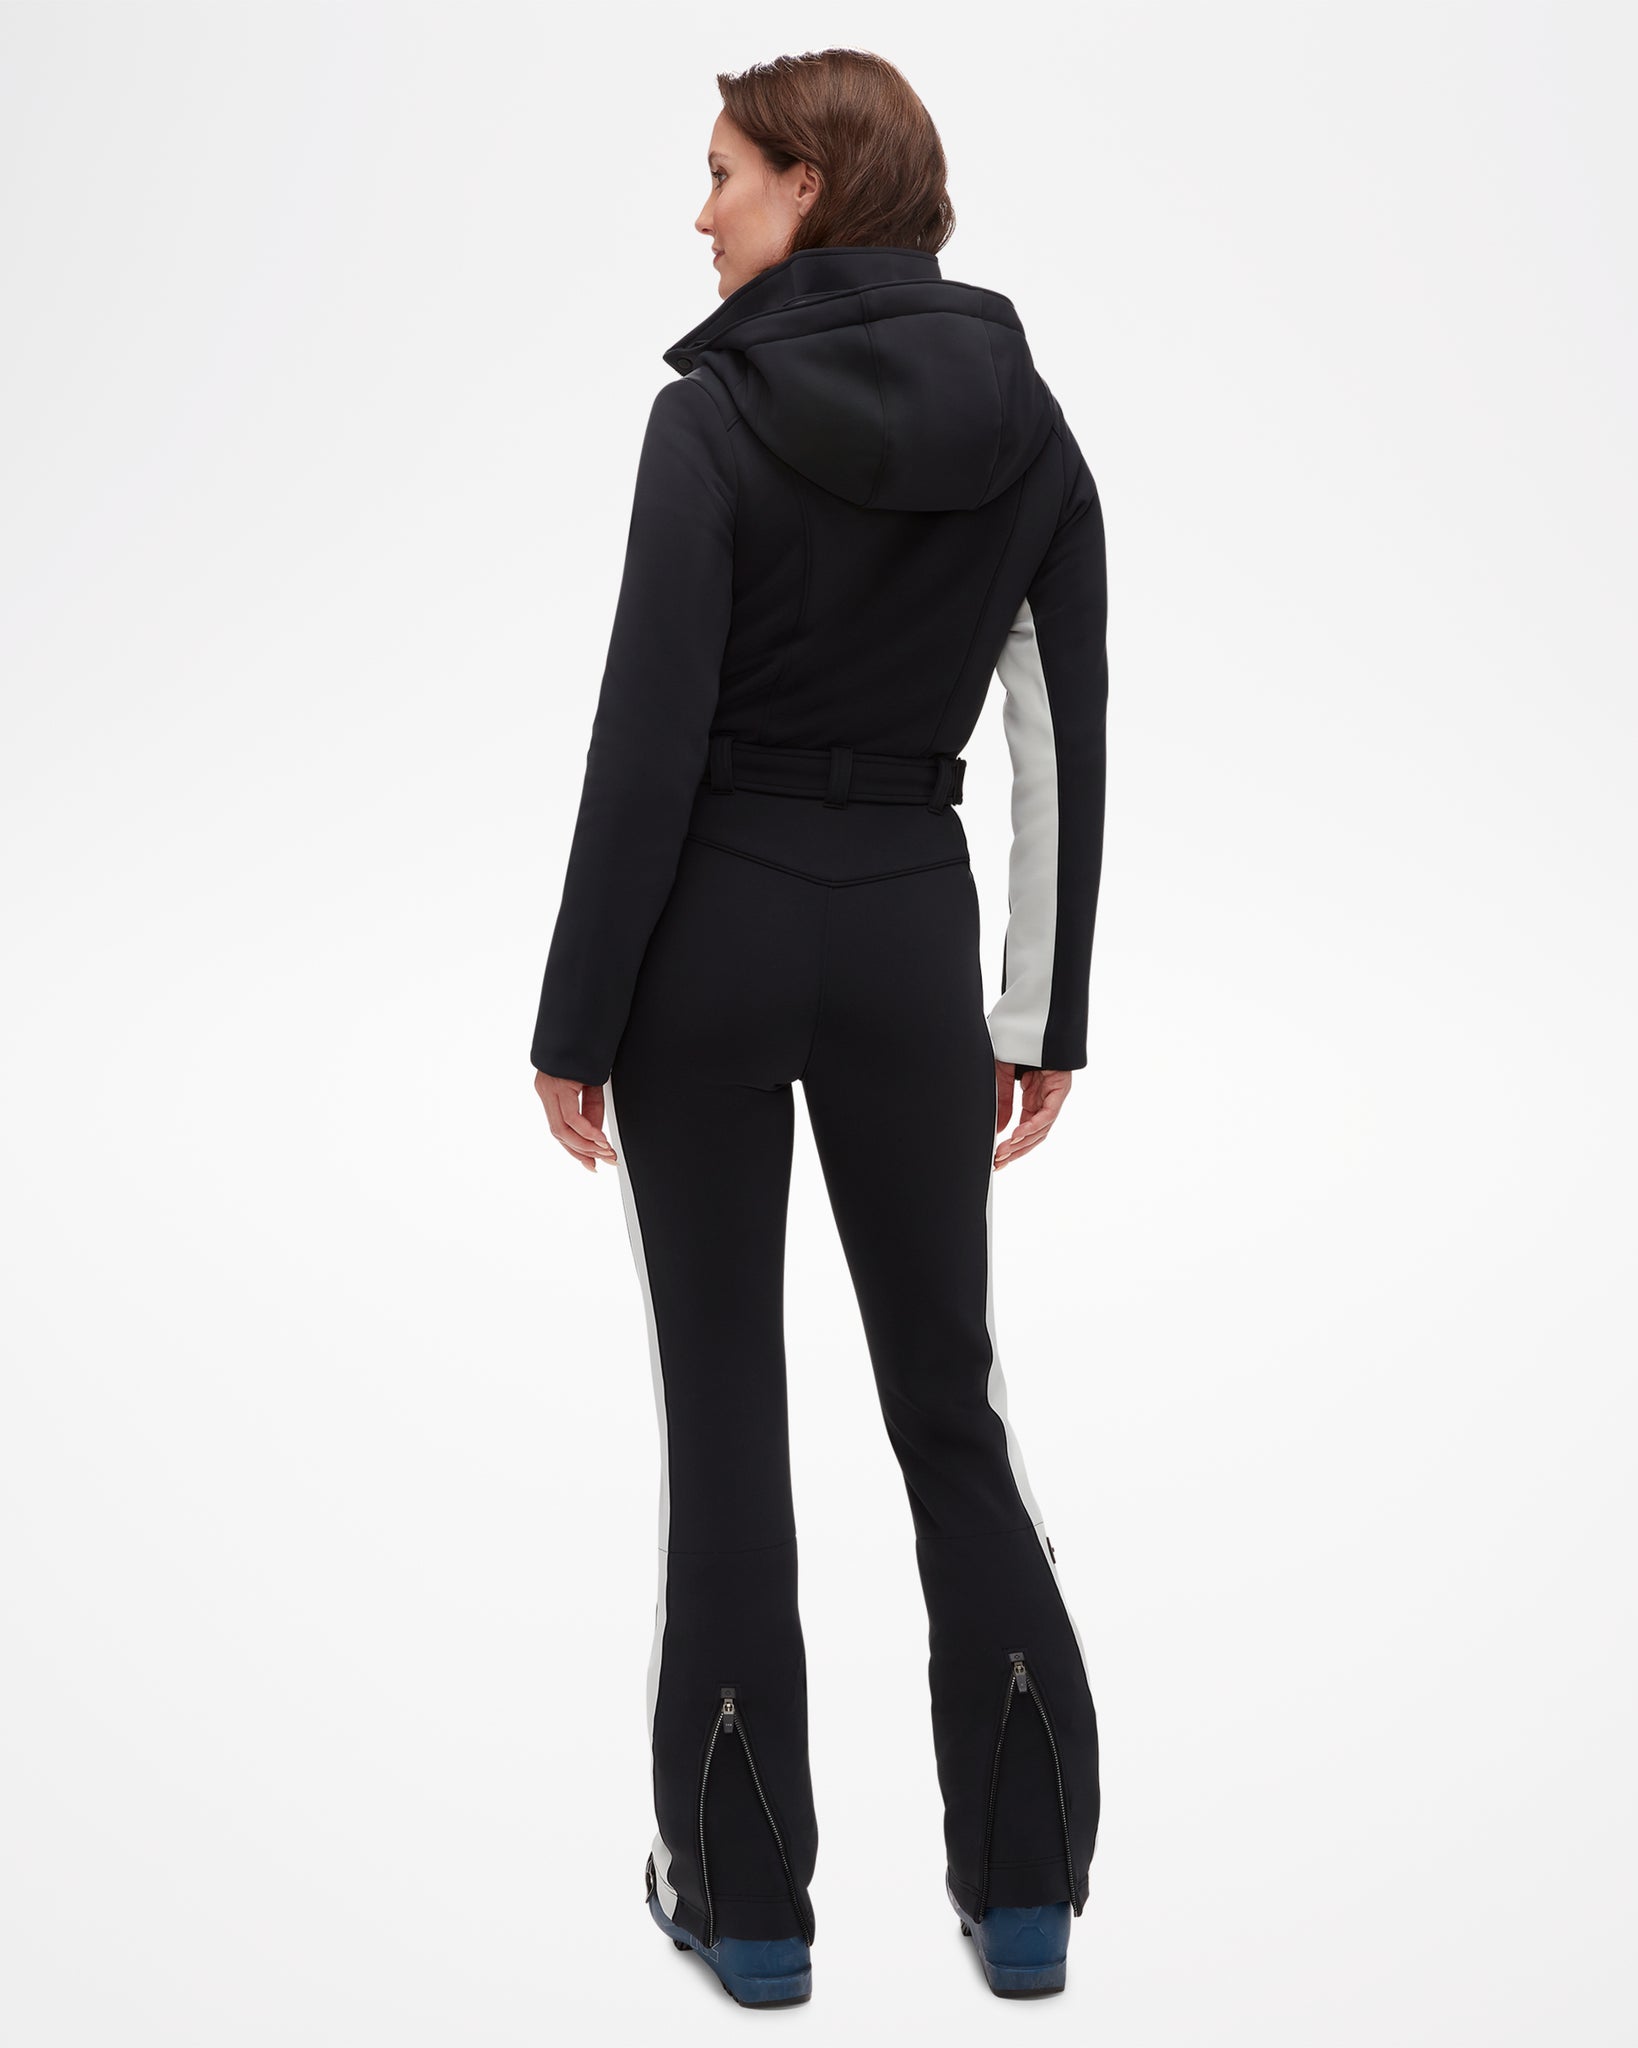 Women's Sleek III Ski Pant - Black